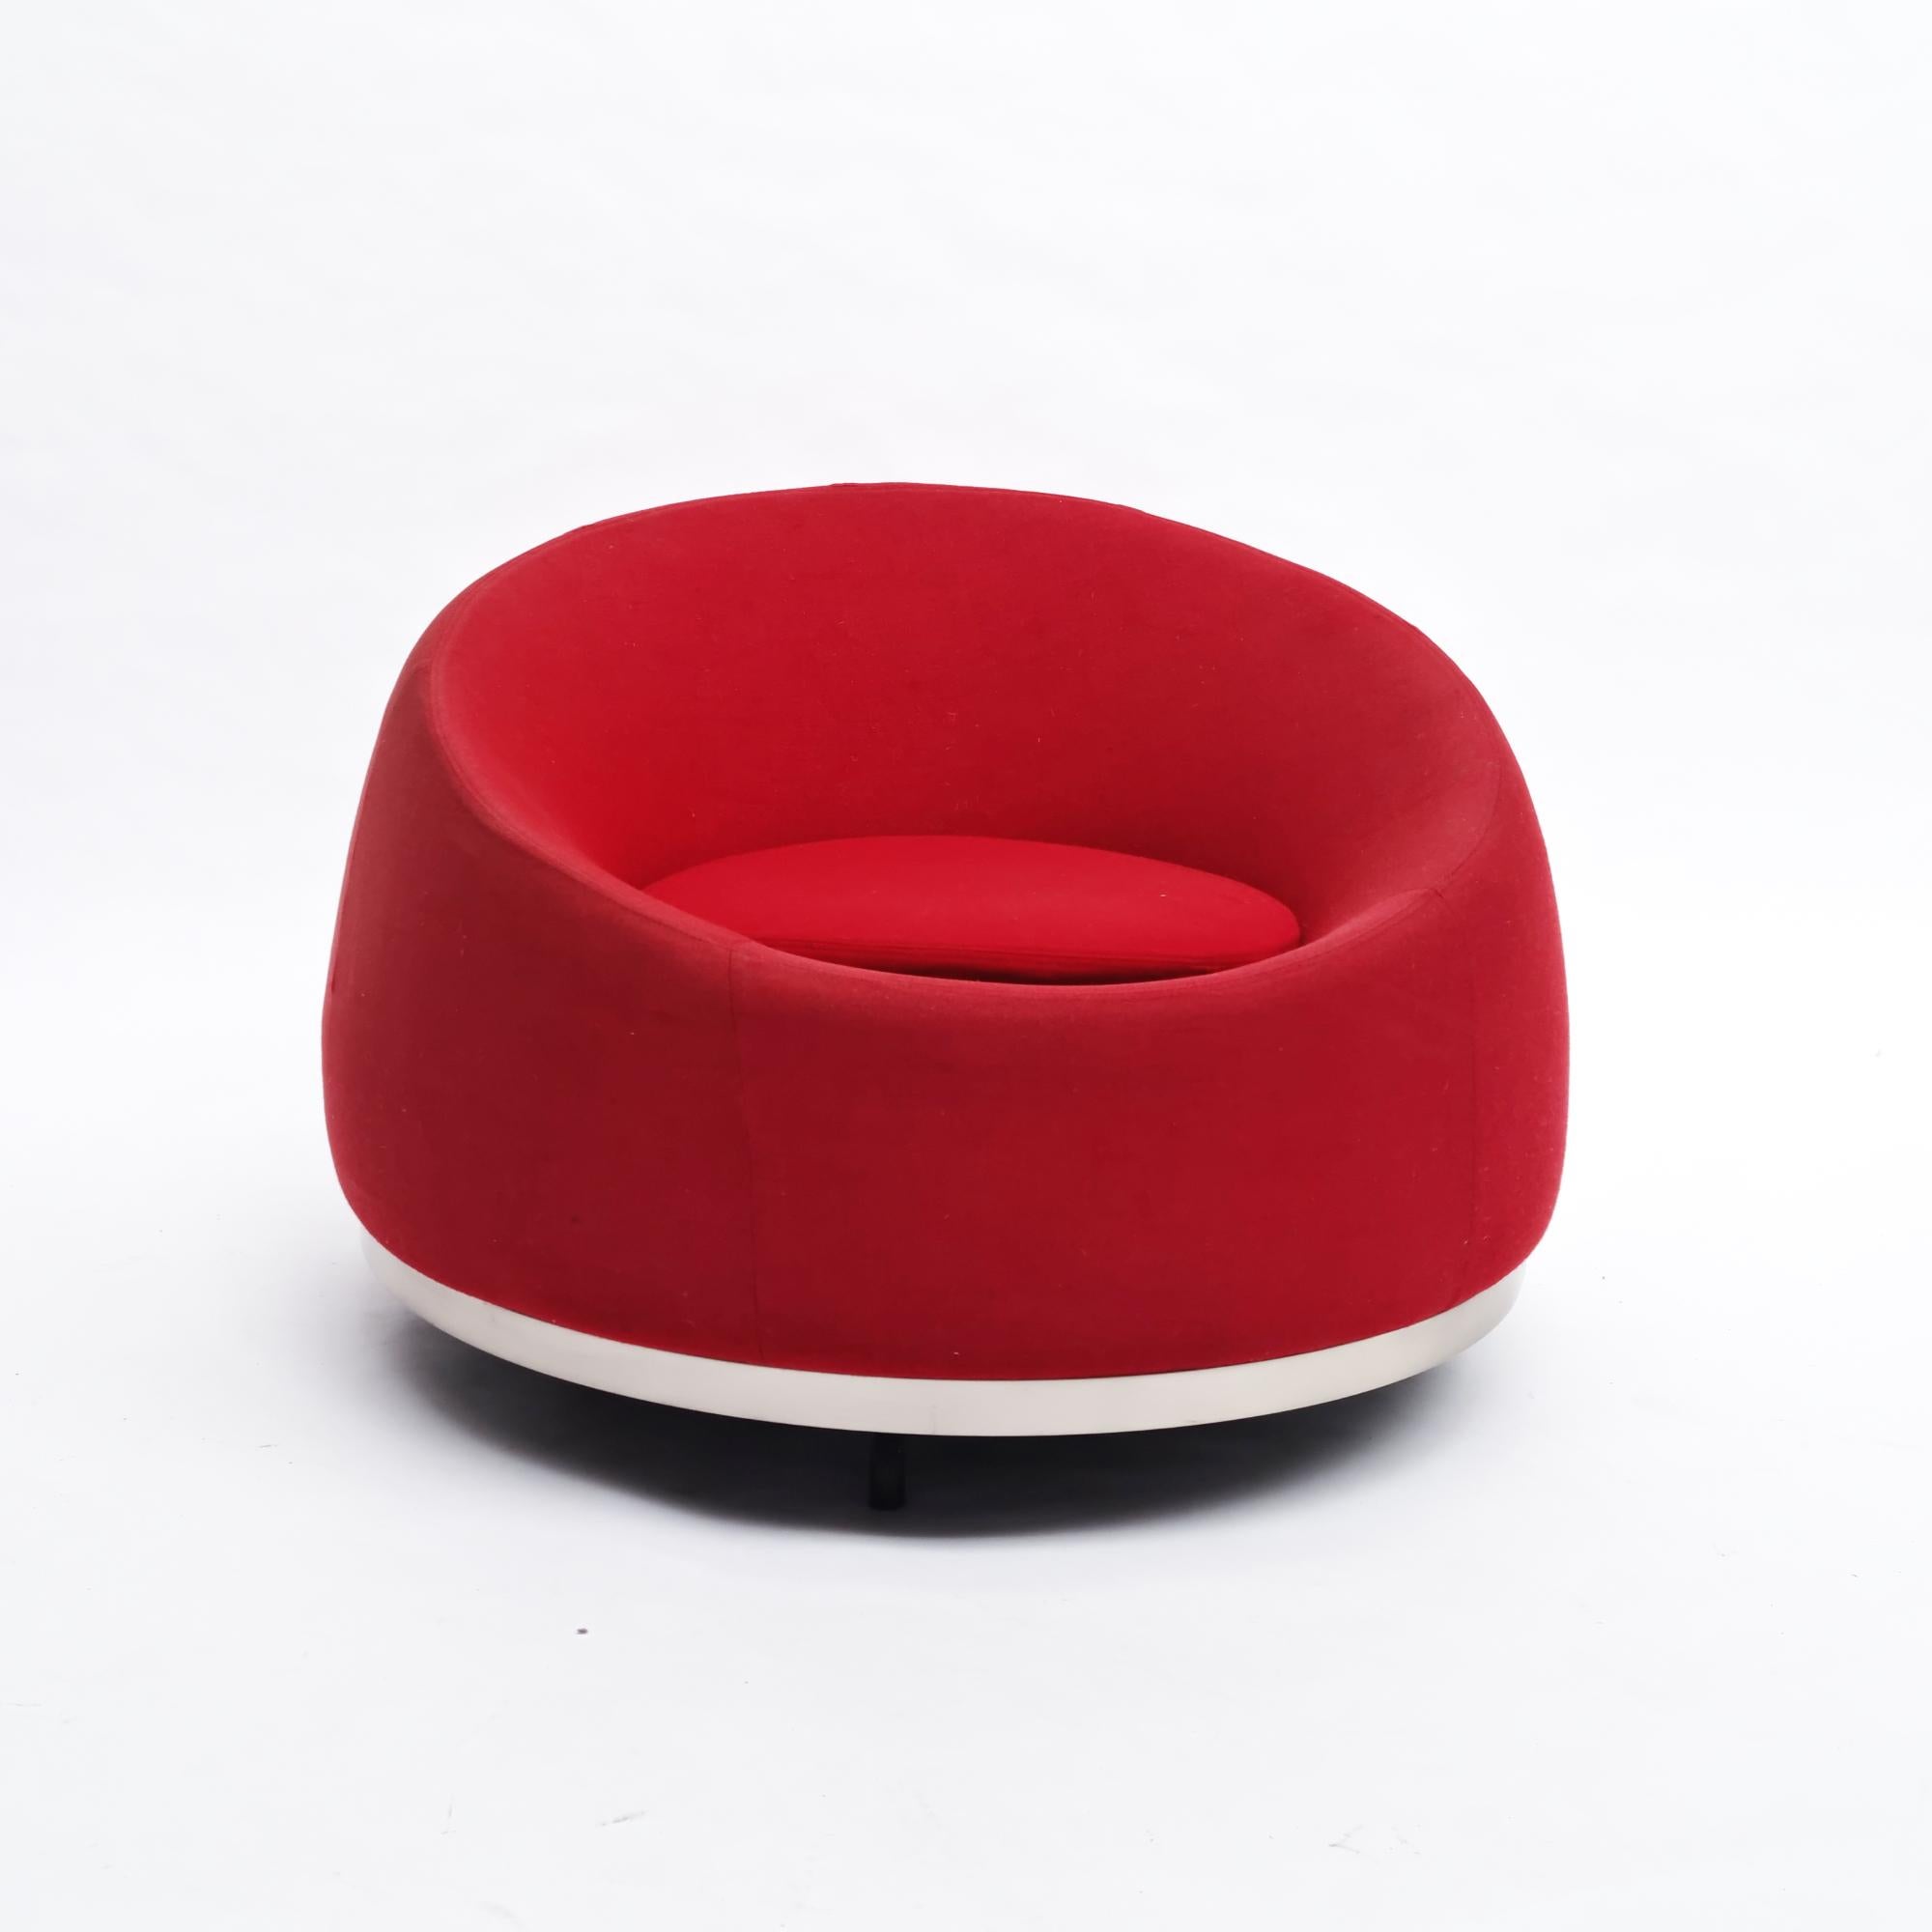 Auf der Suche nach unverwechselbaren gebrauchten Designstücken stieß Sander auf ein bemerkenswertes Kleinod - einen italienischen Vintage-Sessel aus den achtziger Jahren. Dieser drehbare Vertigo-Sessel ist mit einer Polsterung aus Polyurethanschaum